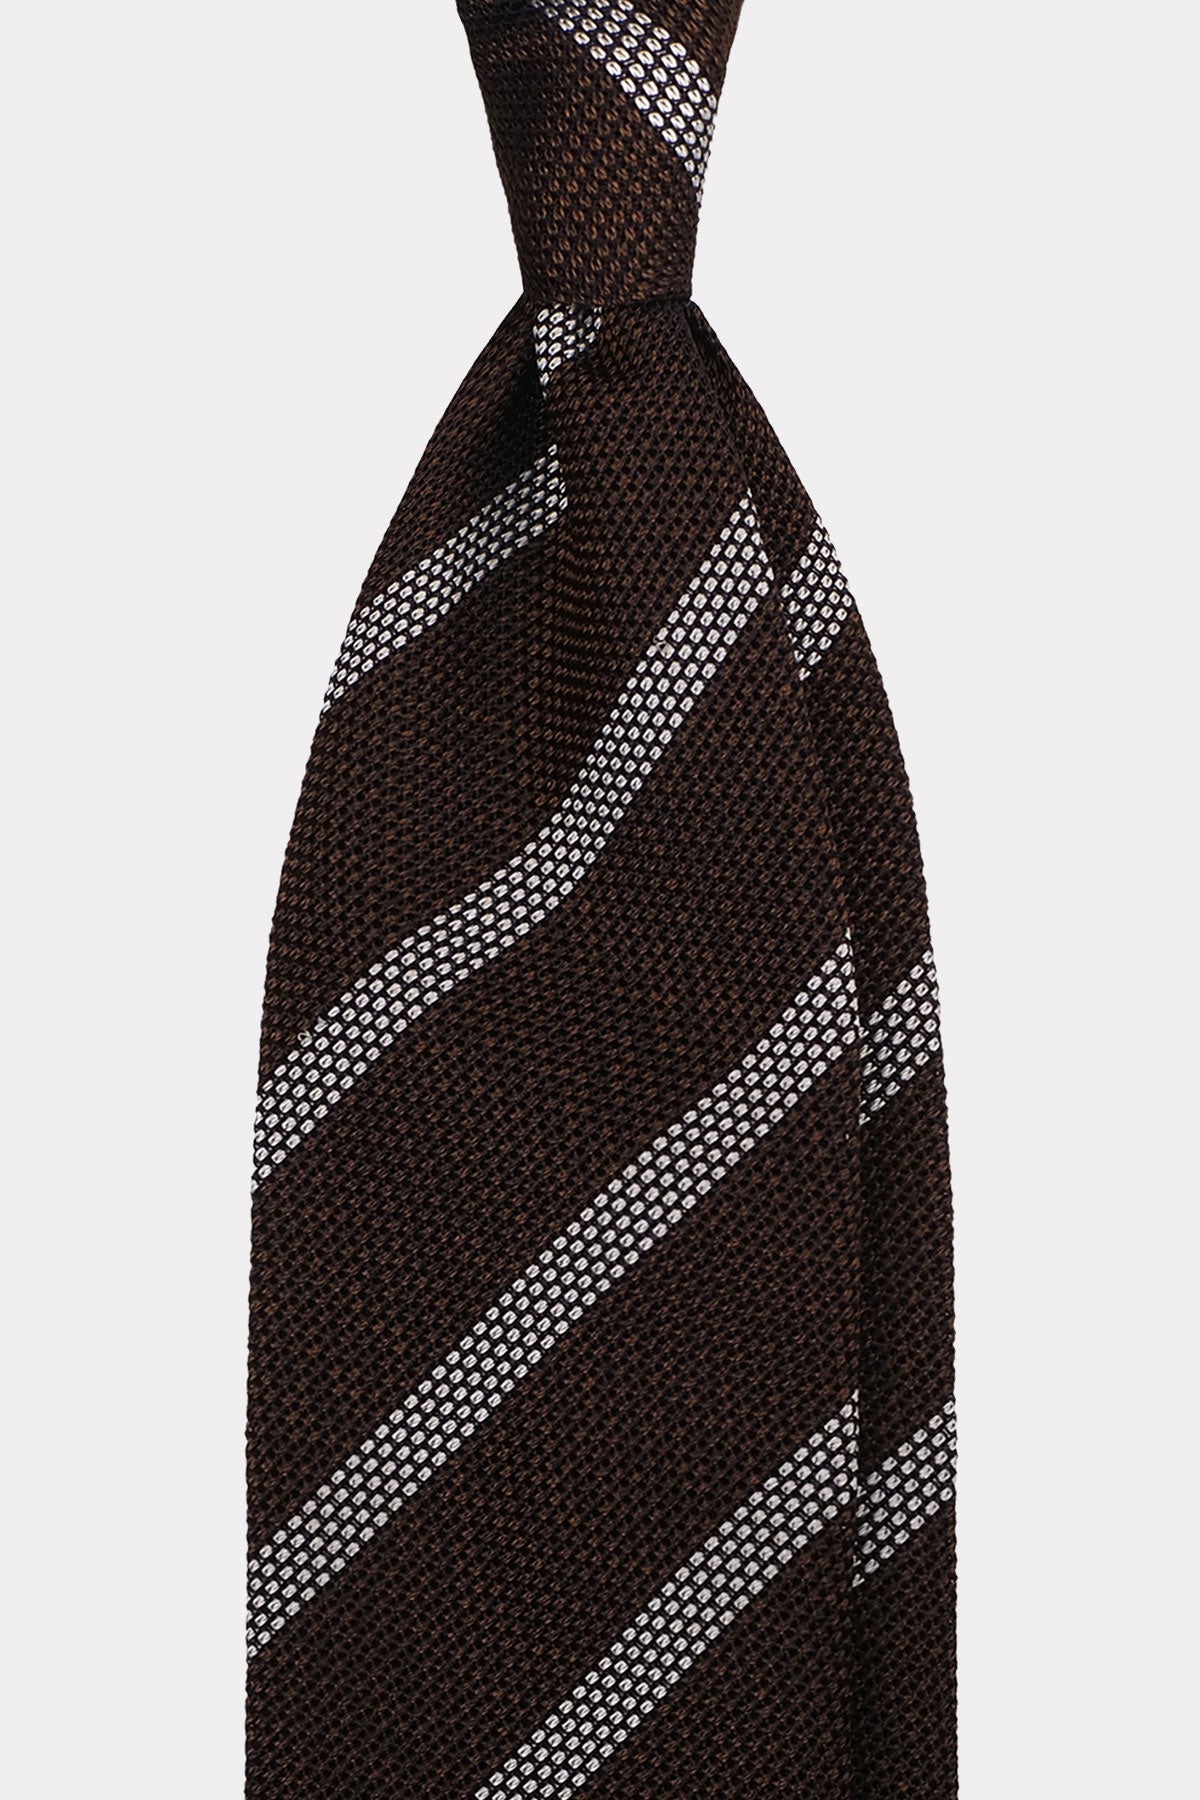 Krawatte in braun-weiß gestreift